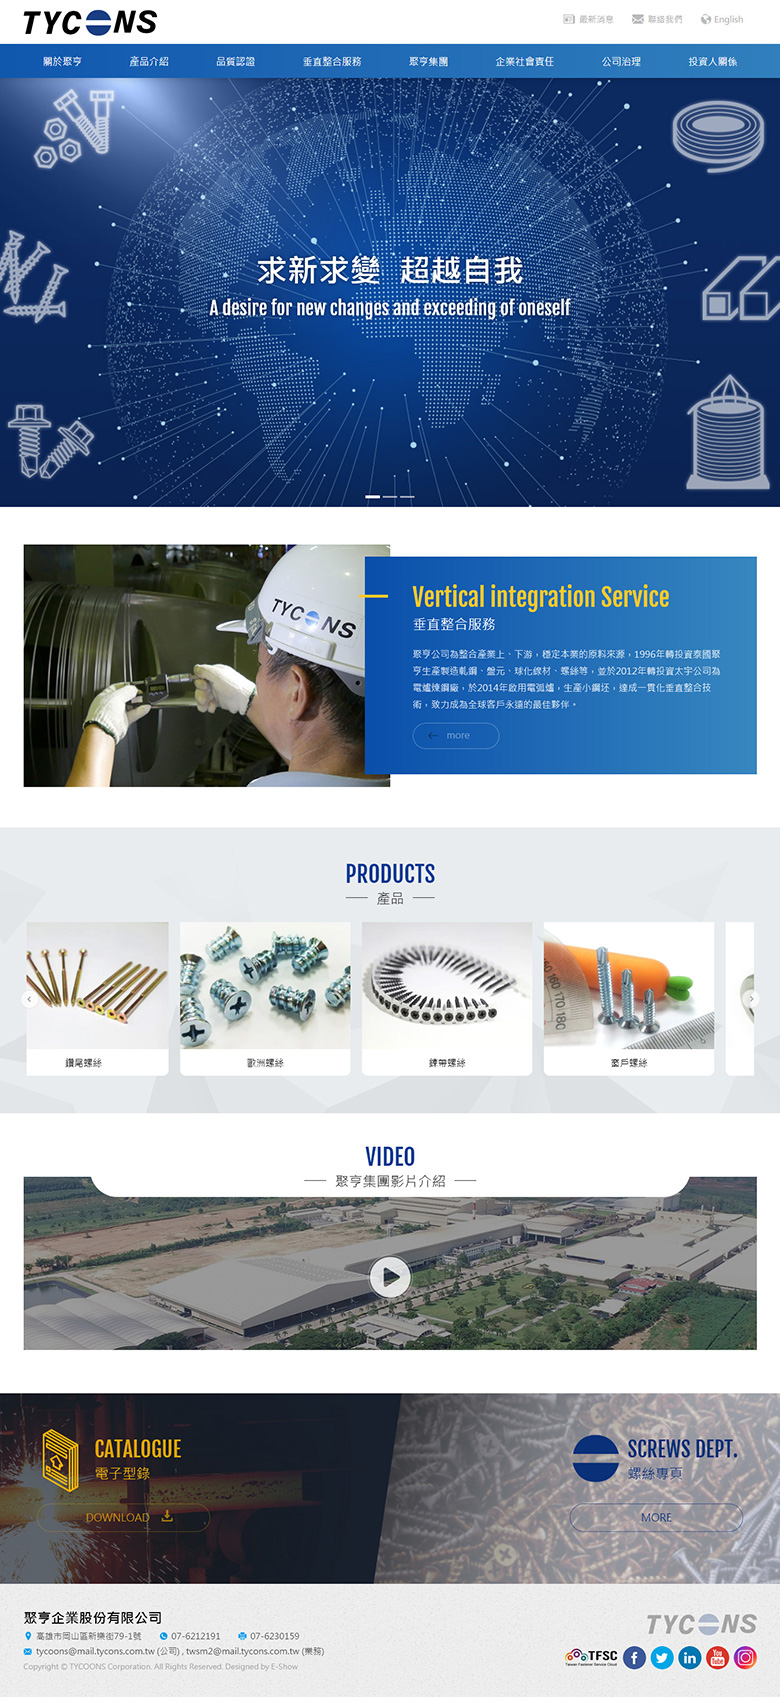 懋莉工業股份有限公司 響應式企業網站設計
